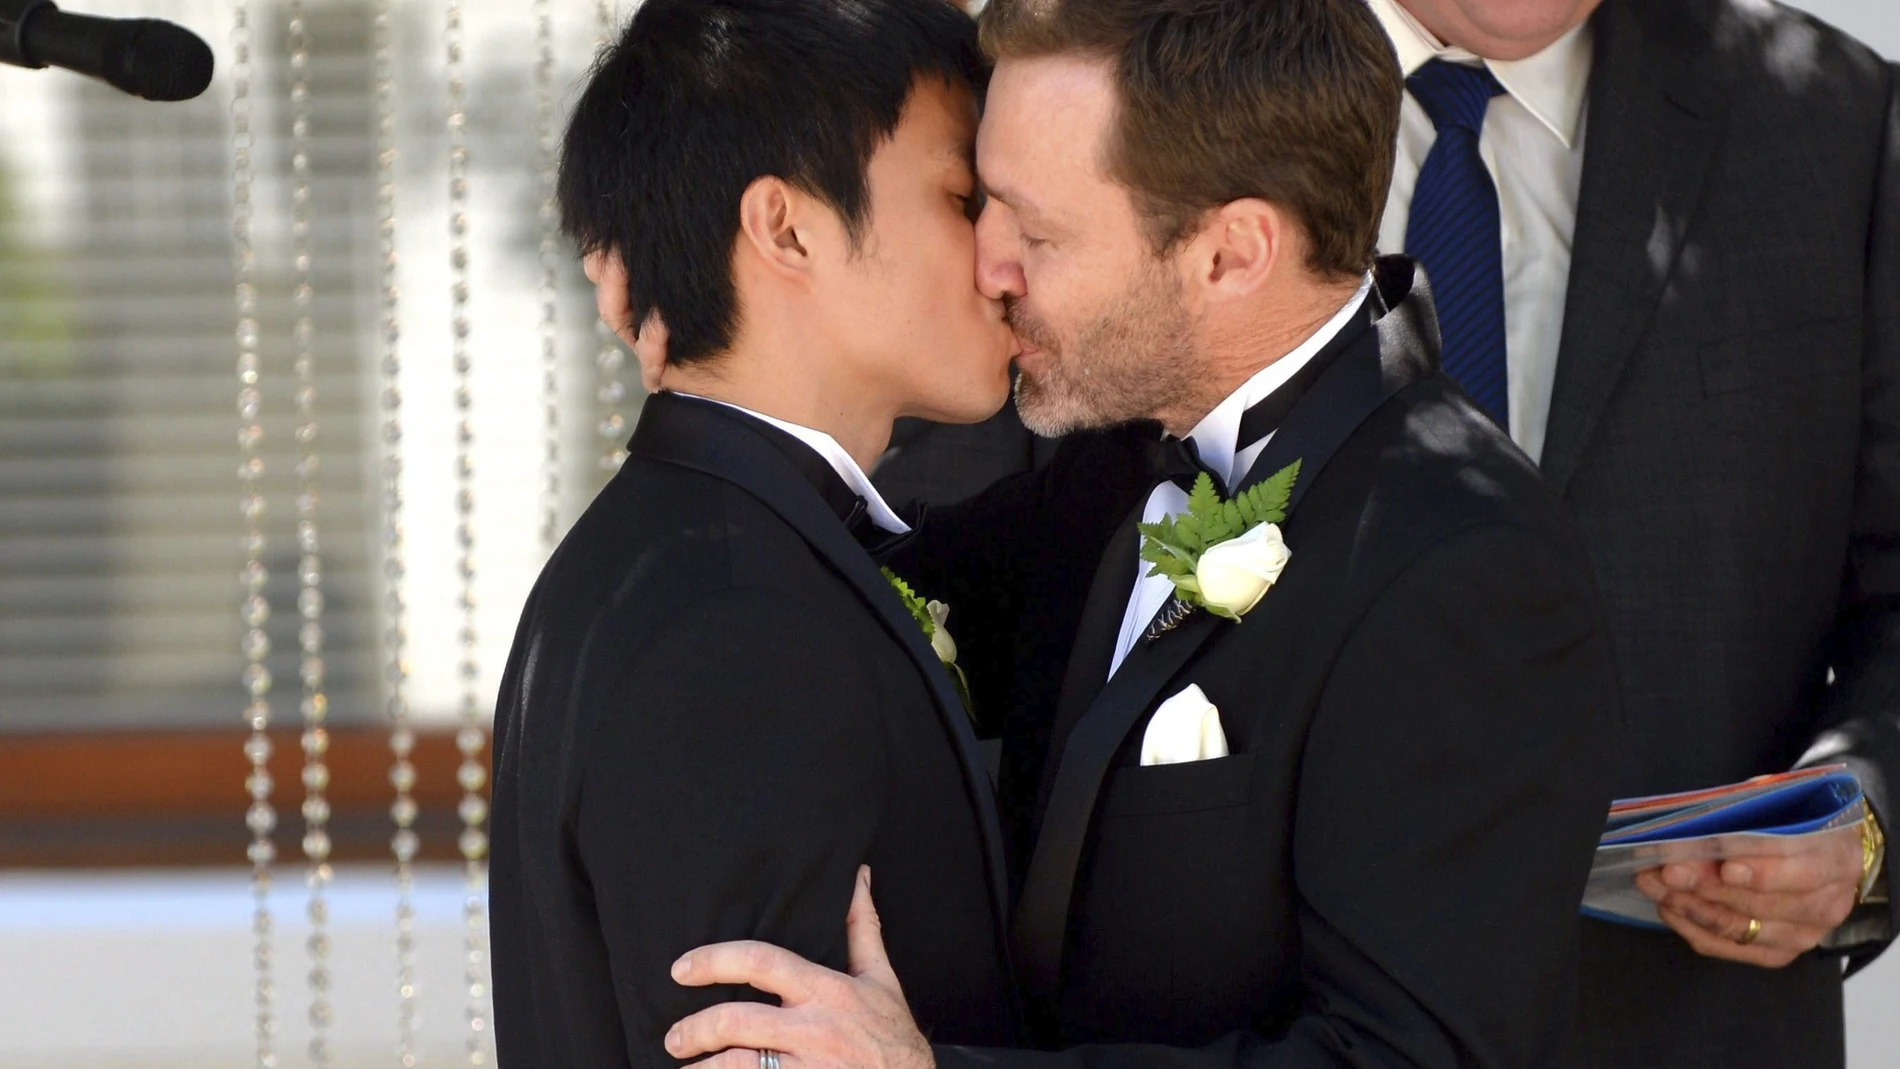 Una de las primeras parejas en contraer matrimonio homosexual, tras darse el "sí, quiero"